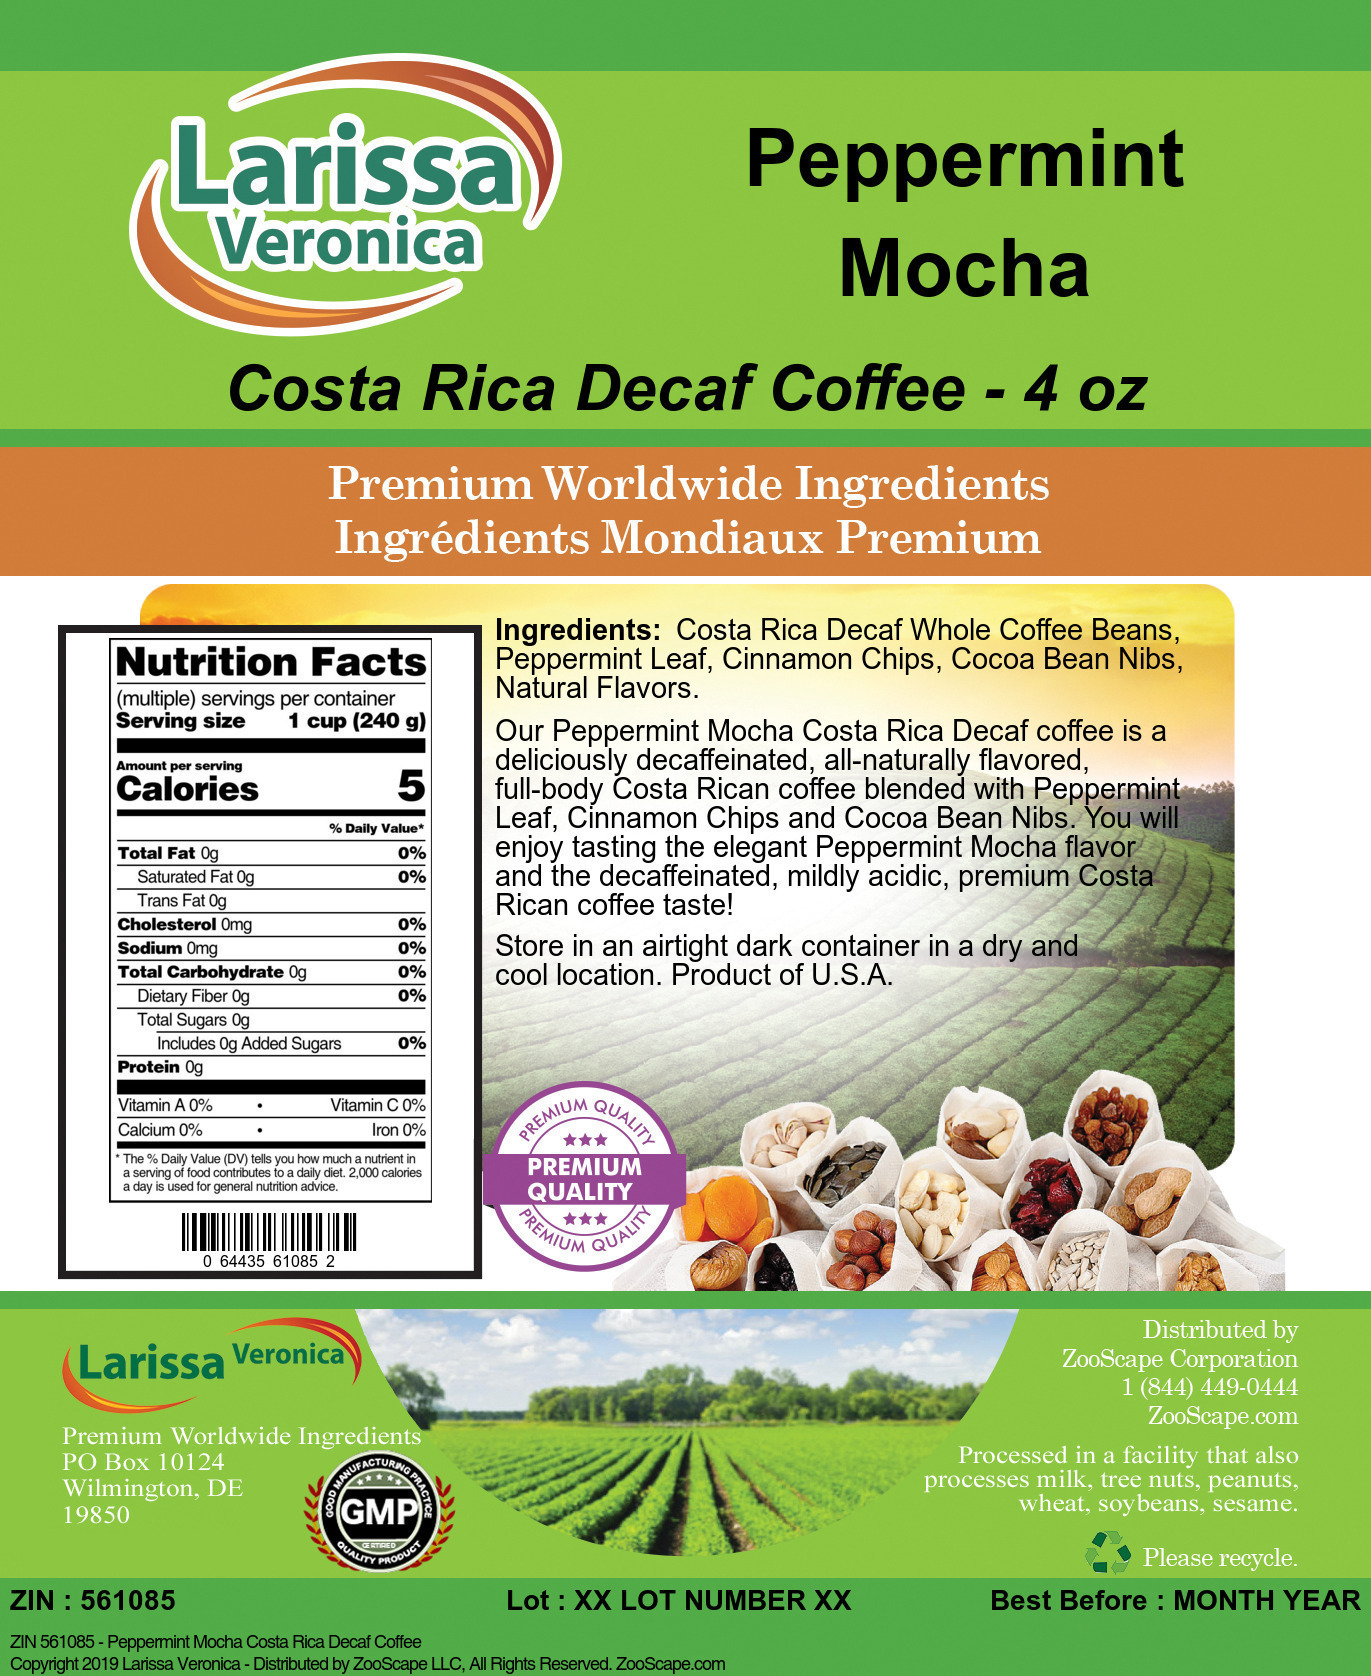 Peppermint Mocha Costa Rica Decaf Coffee - Label